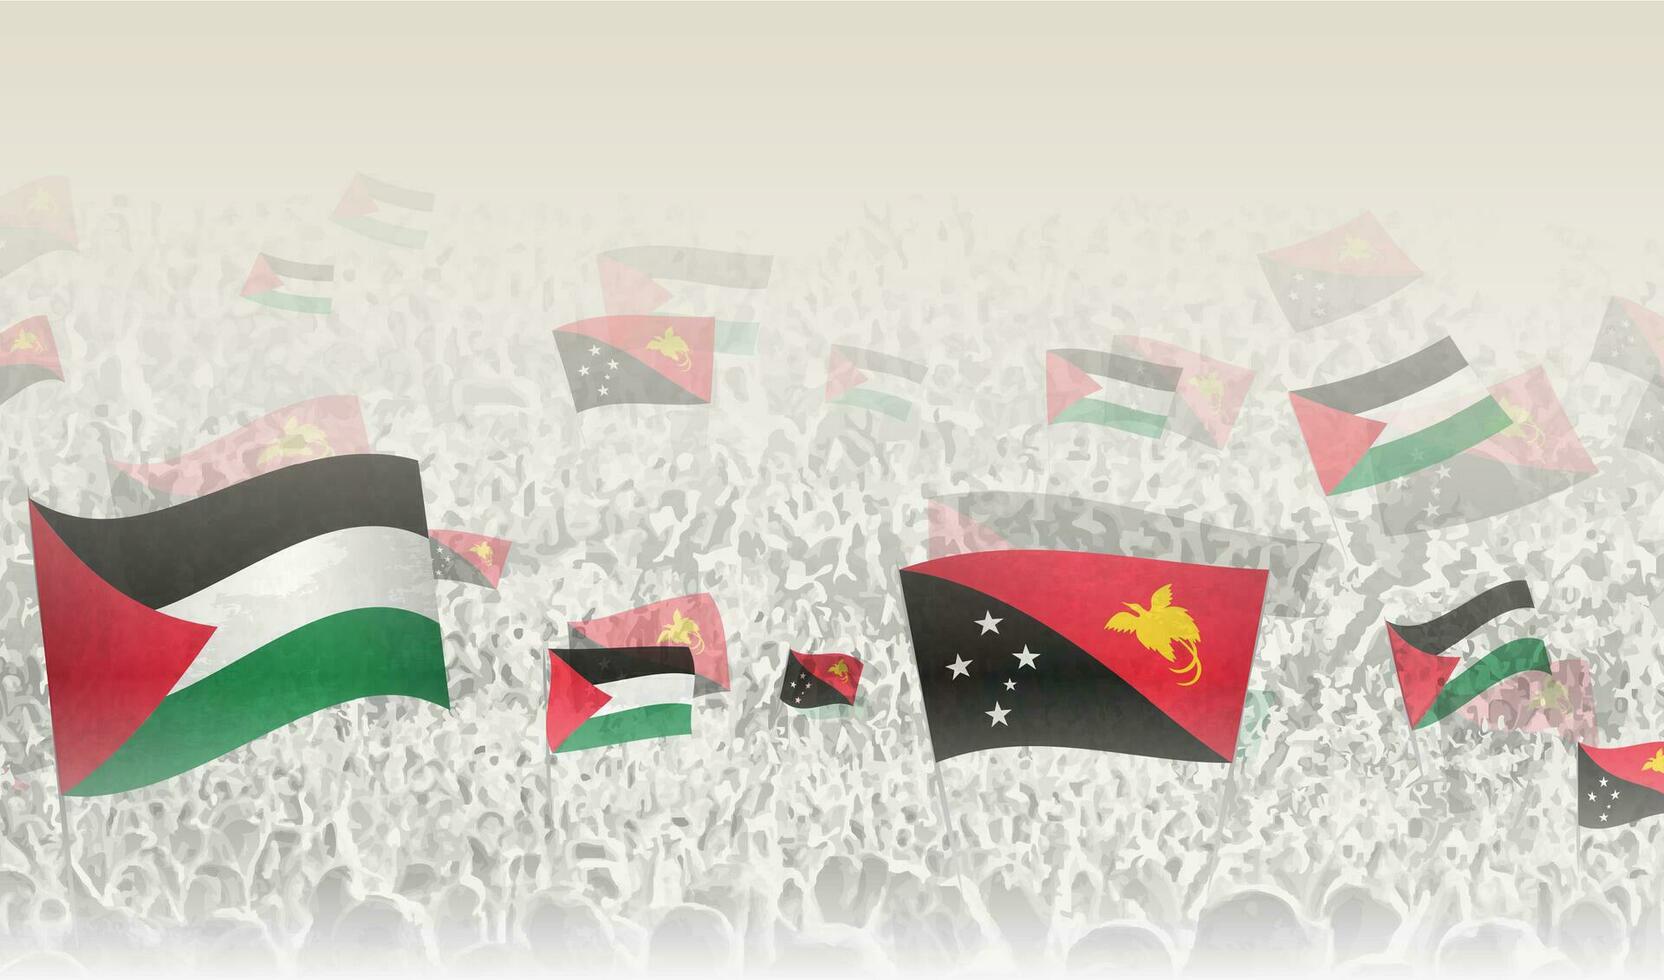 palestina och papua ny guinea flaggor i en folkmassan av glädjande människor. vektor